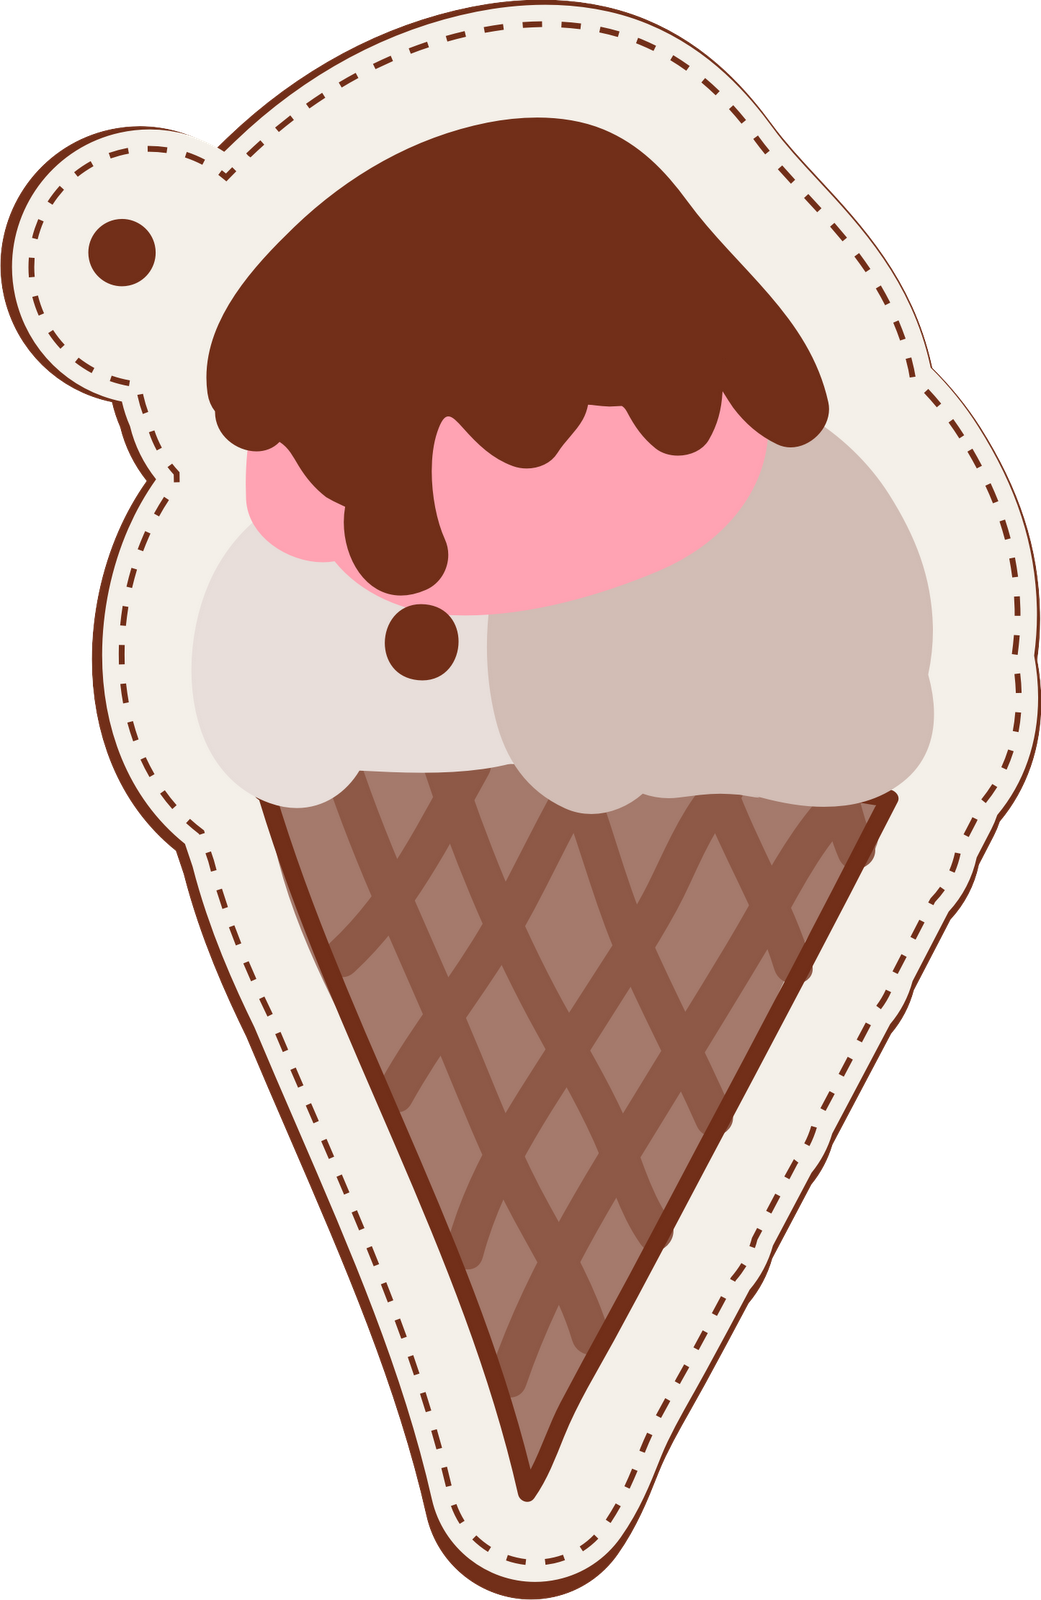 Pesquisa - Ice Cream Cone (1041x1600)